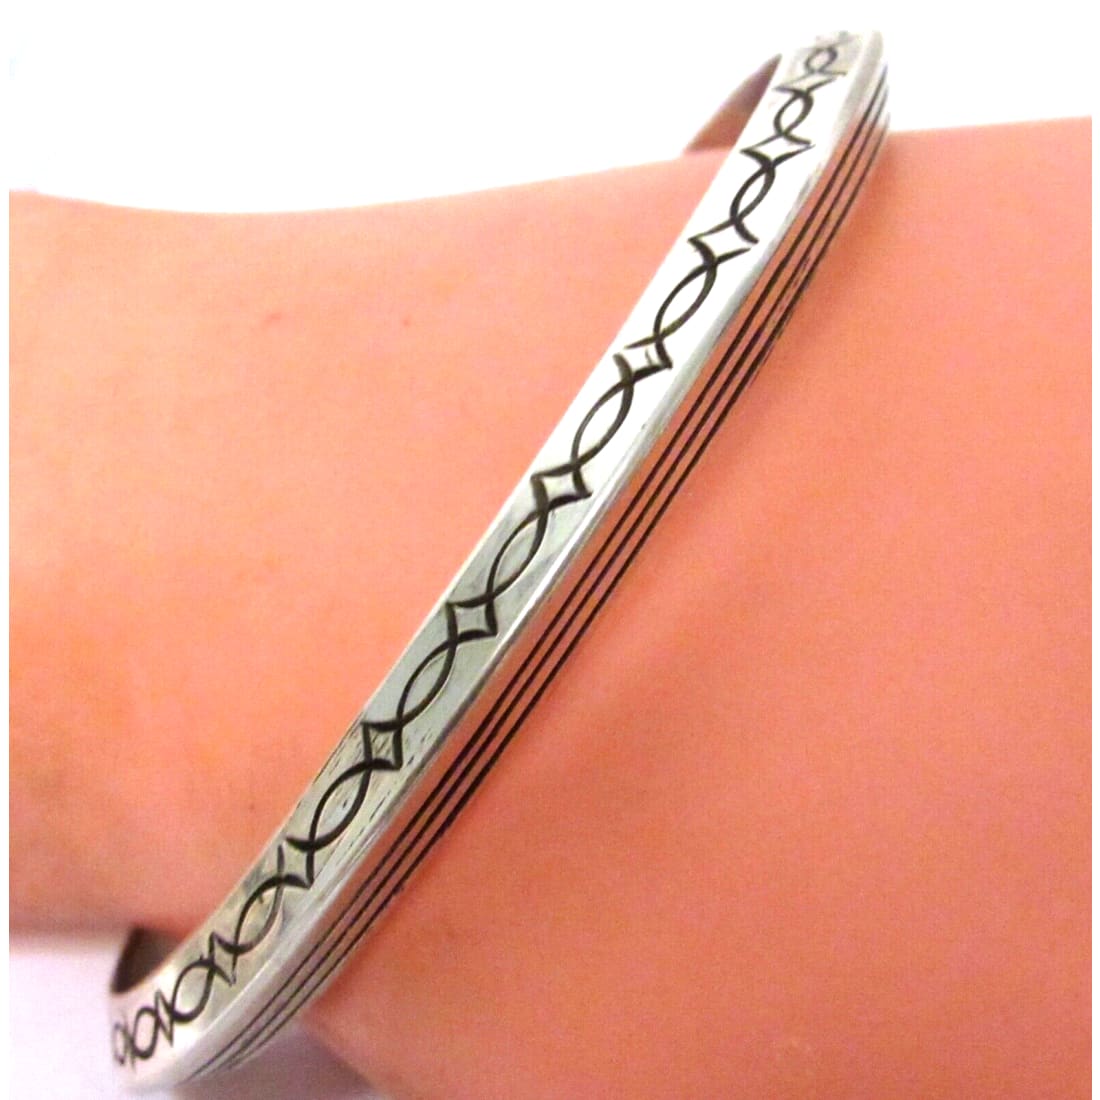 Navajo Bangle Bracelet Sterling Silver Ingot Tribal Design 